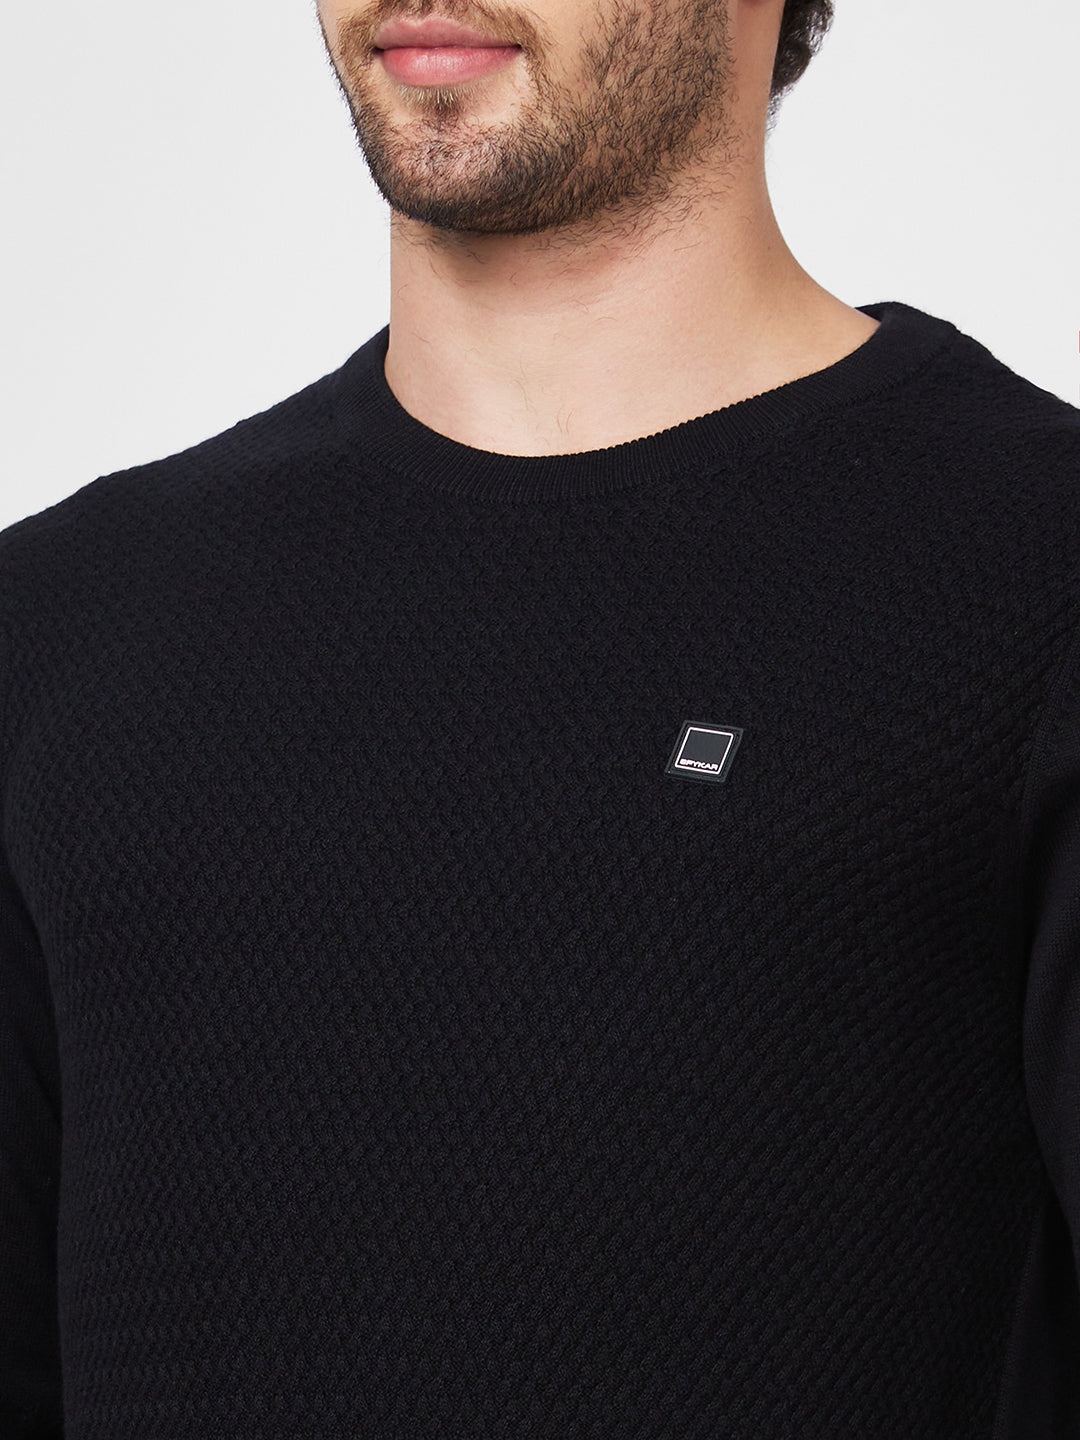 Spykar Collarless Full Sleeves Black Sweater For Men